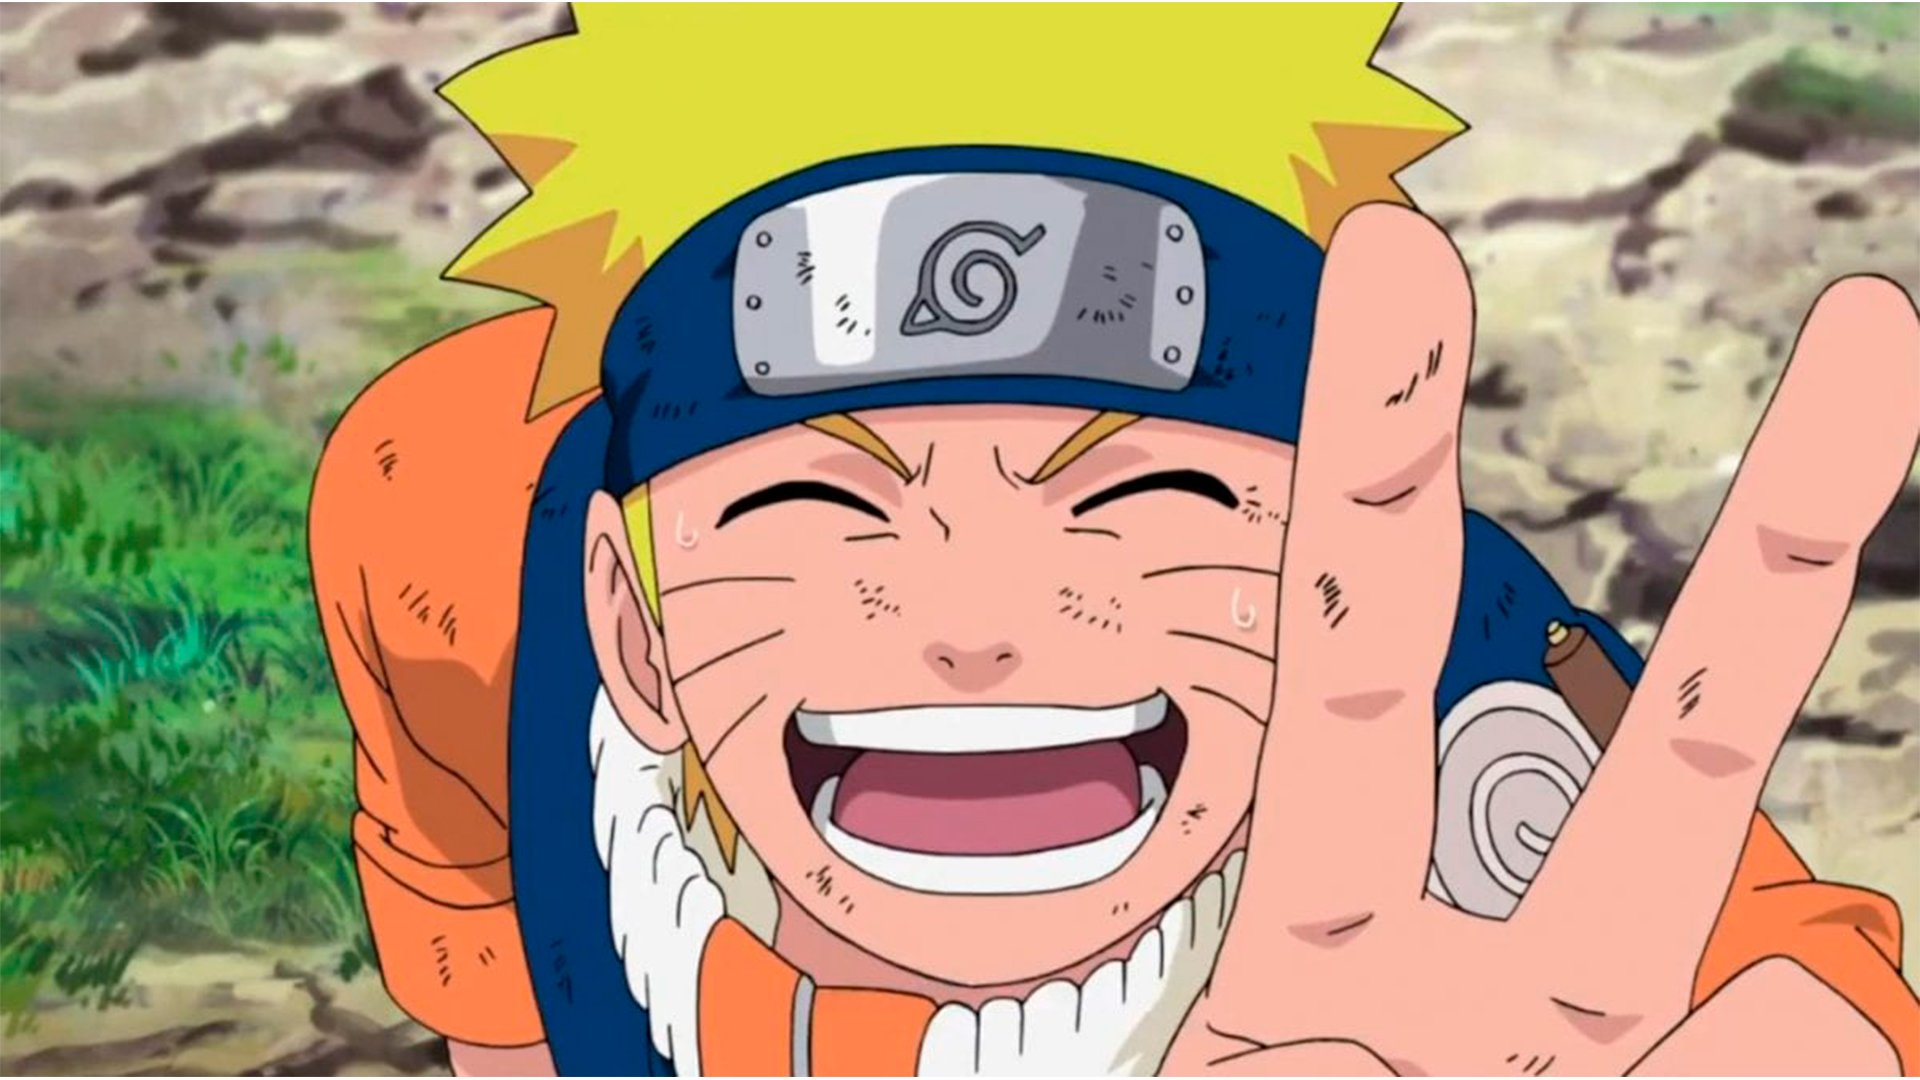 Naruto: Você conhece significado da palavra além do anime?